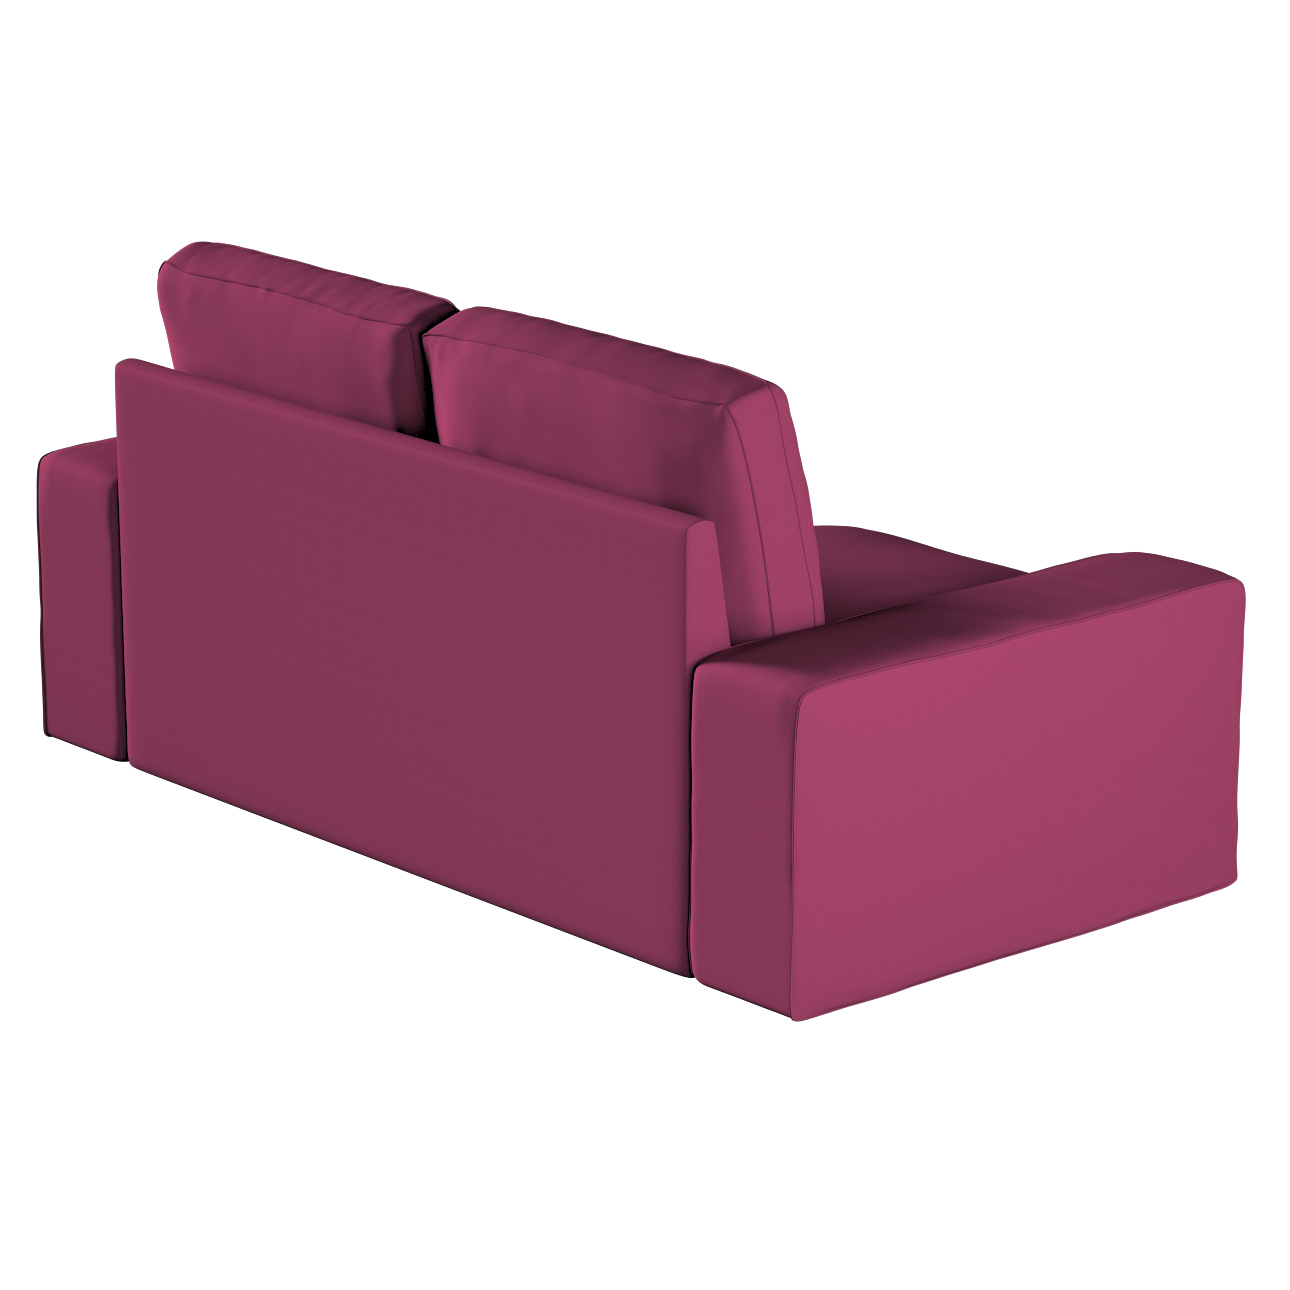 Bezug für Kivik 2-Sitzer Sofa, pflaume , Bezug für Sofa Kivik 2-Sitzer, Cot günstig online kaufen